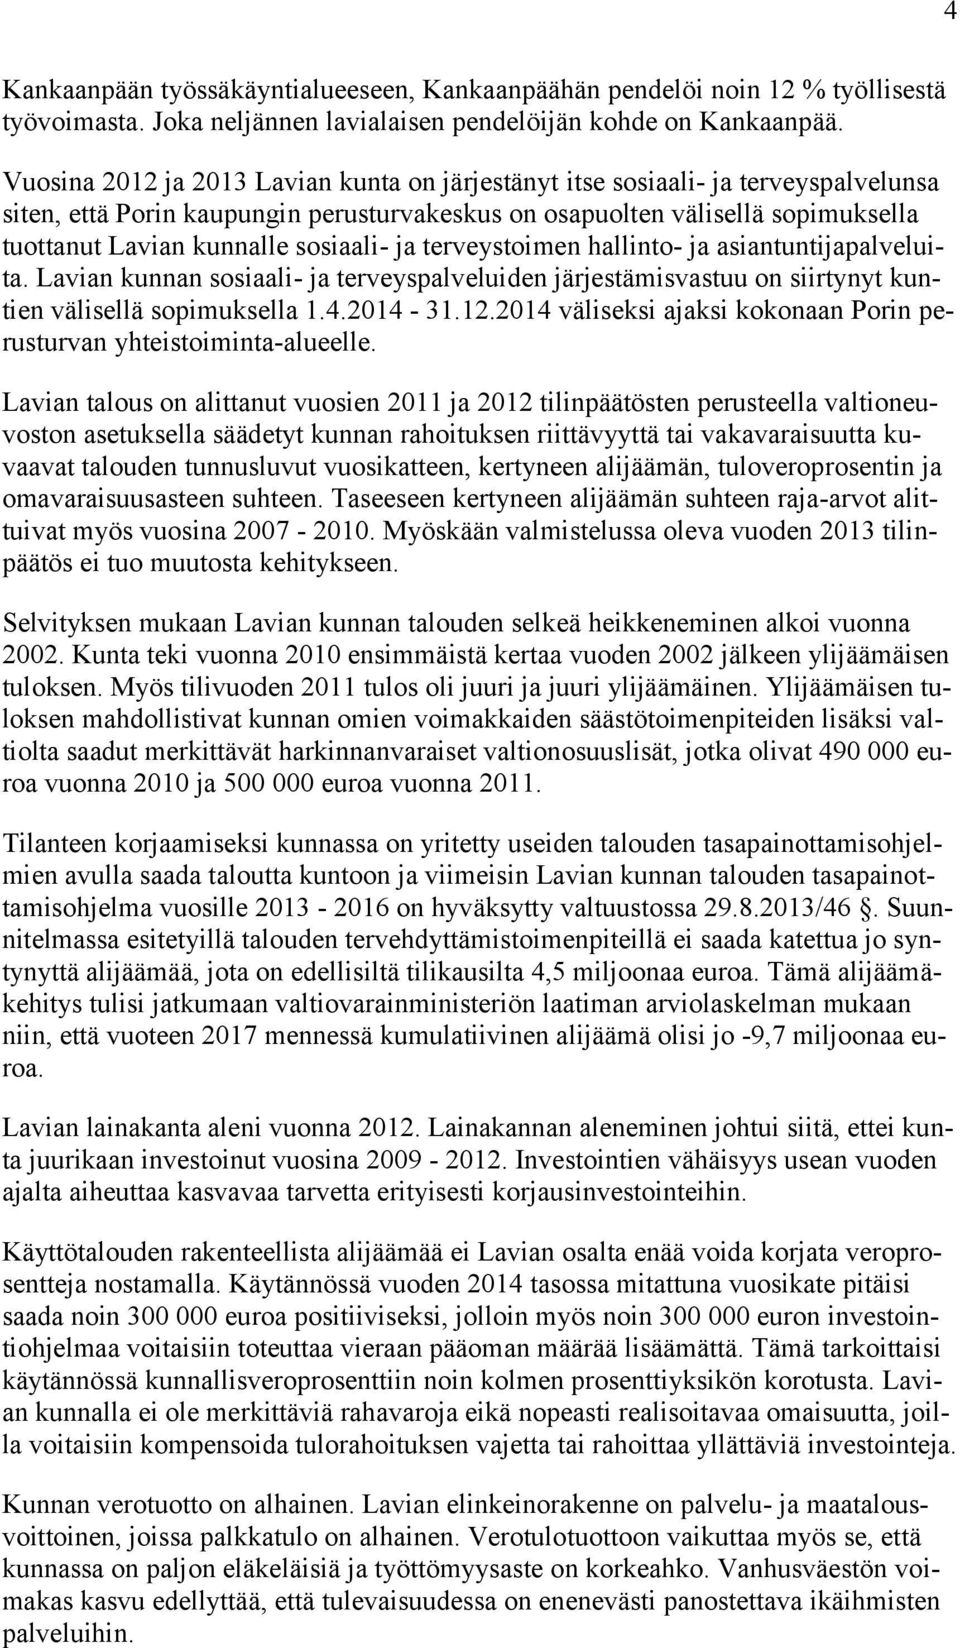 sosiaali- ja terveystoimen hallinto- ja asiantuntijapalveluita. Lavian kunnan sosiaali- ja terveyspalveluiden järjestämisvastuu on siirtynyt kuntien välisellä sopimuksella 1.4.2014-31.12.